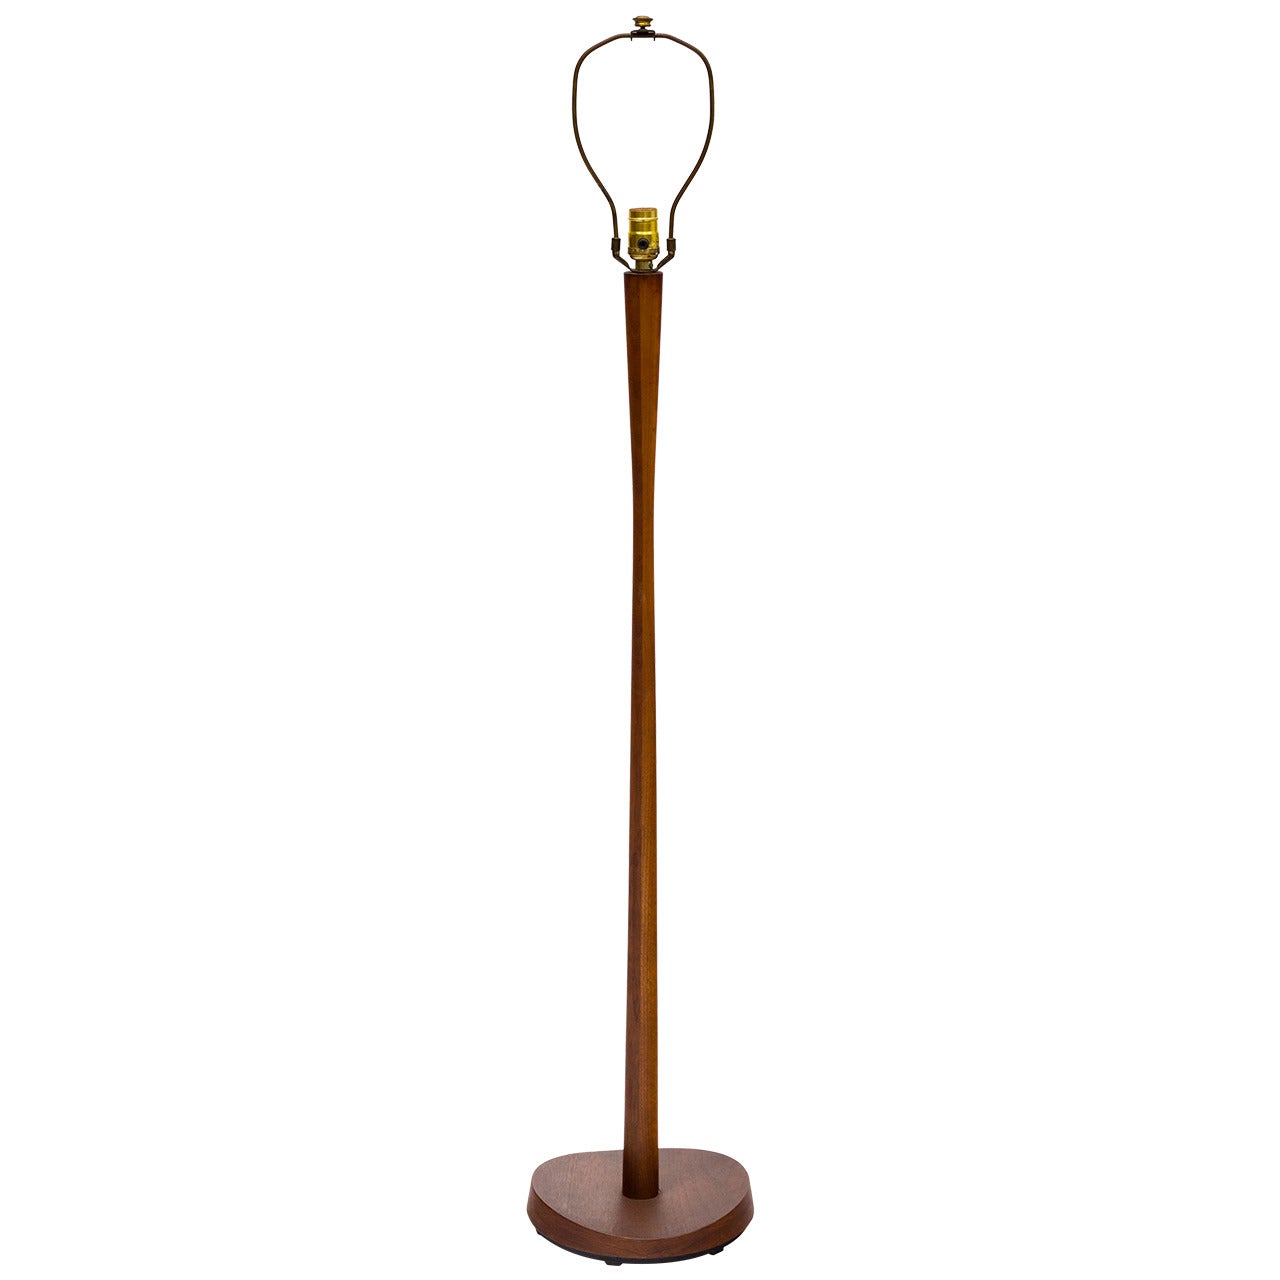 Danish Teak Floor Lamp by Laurel Lamp Company